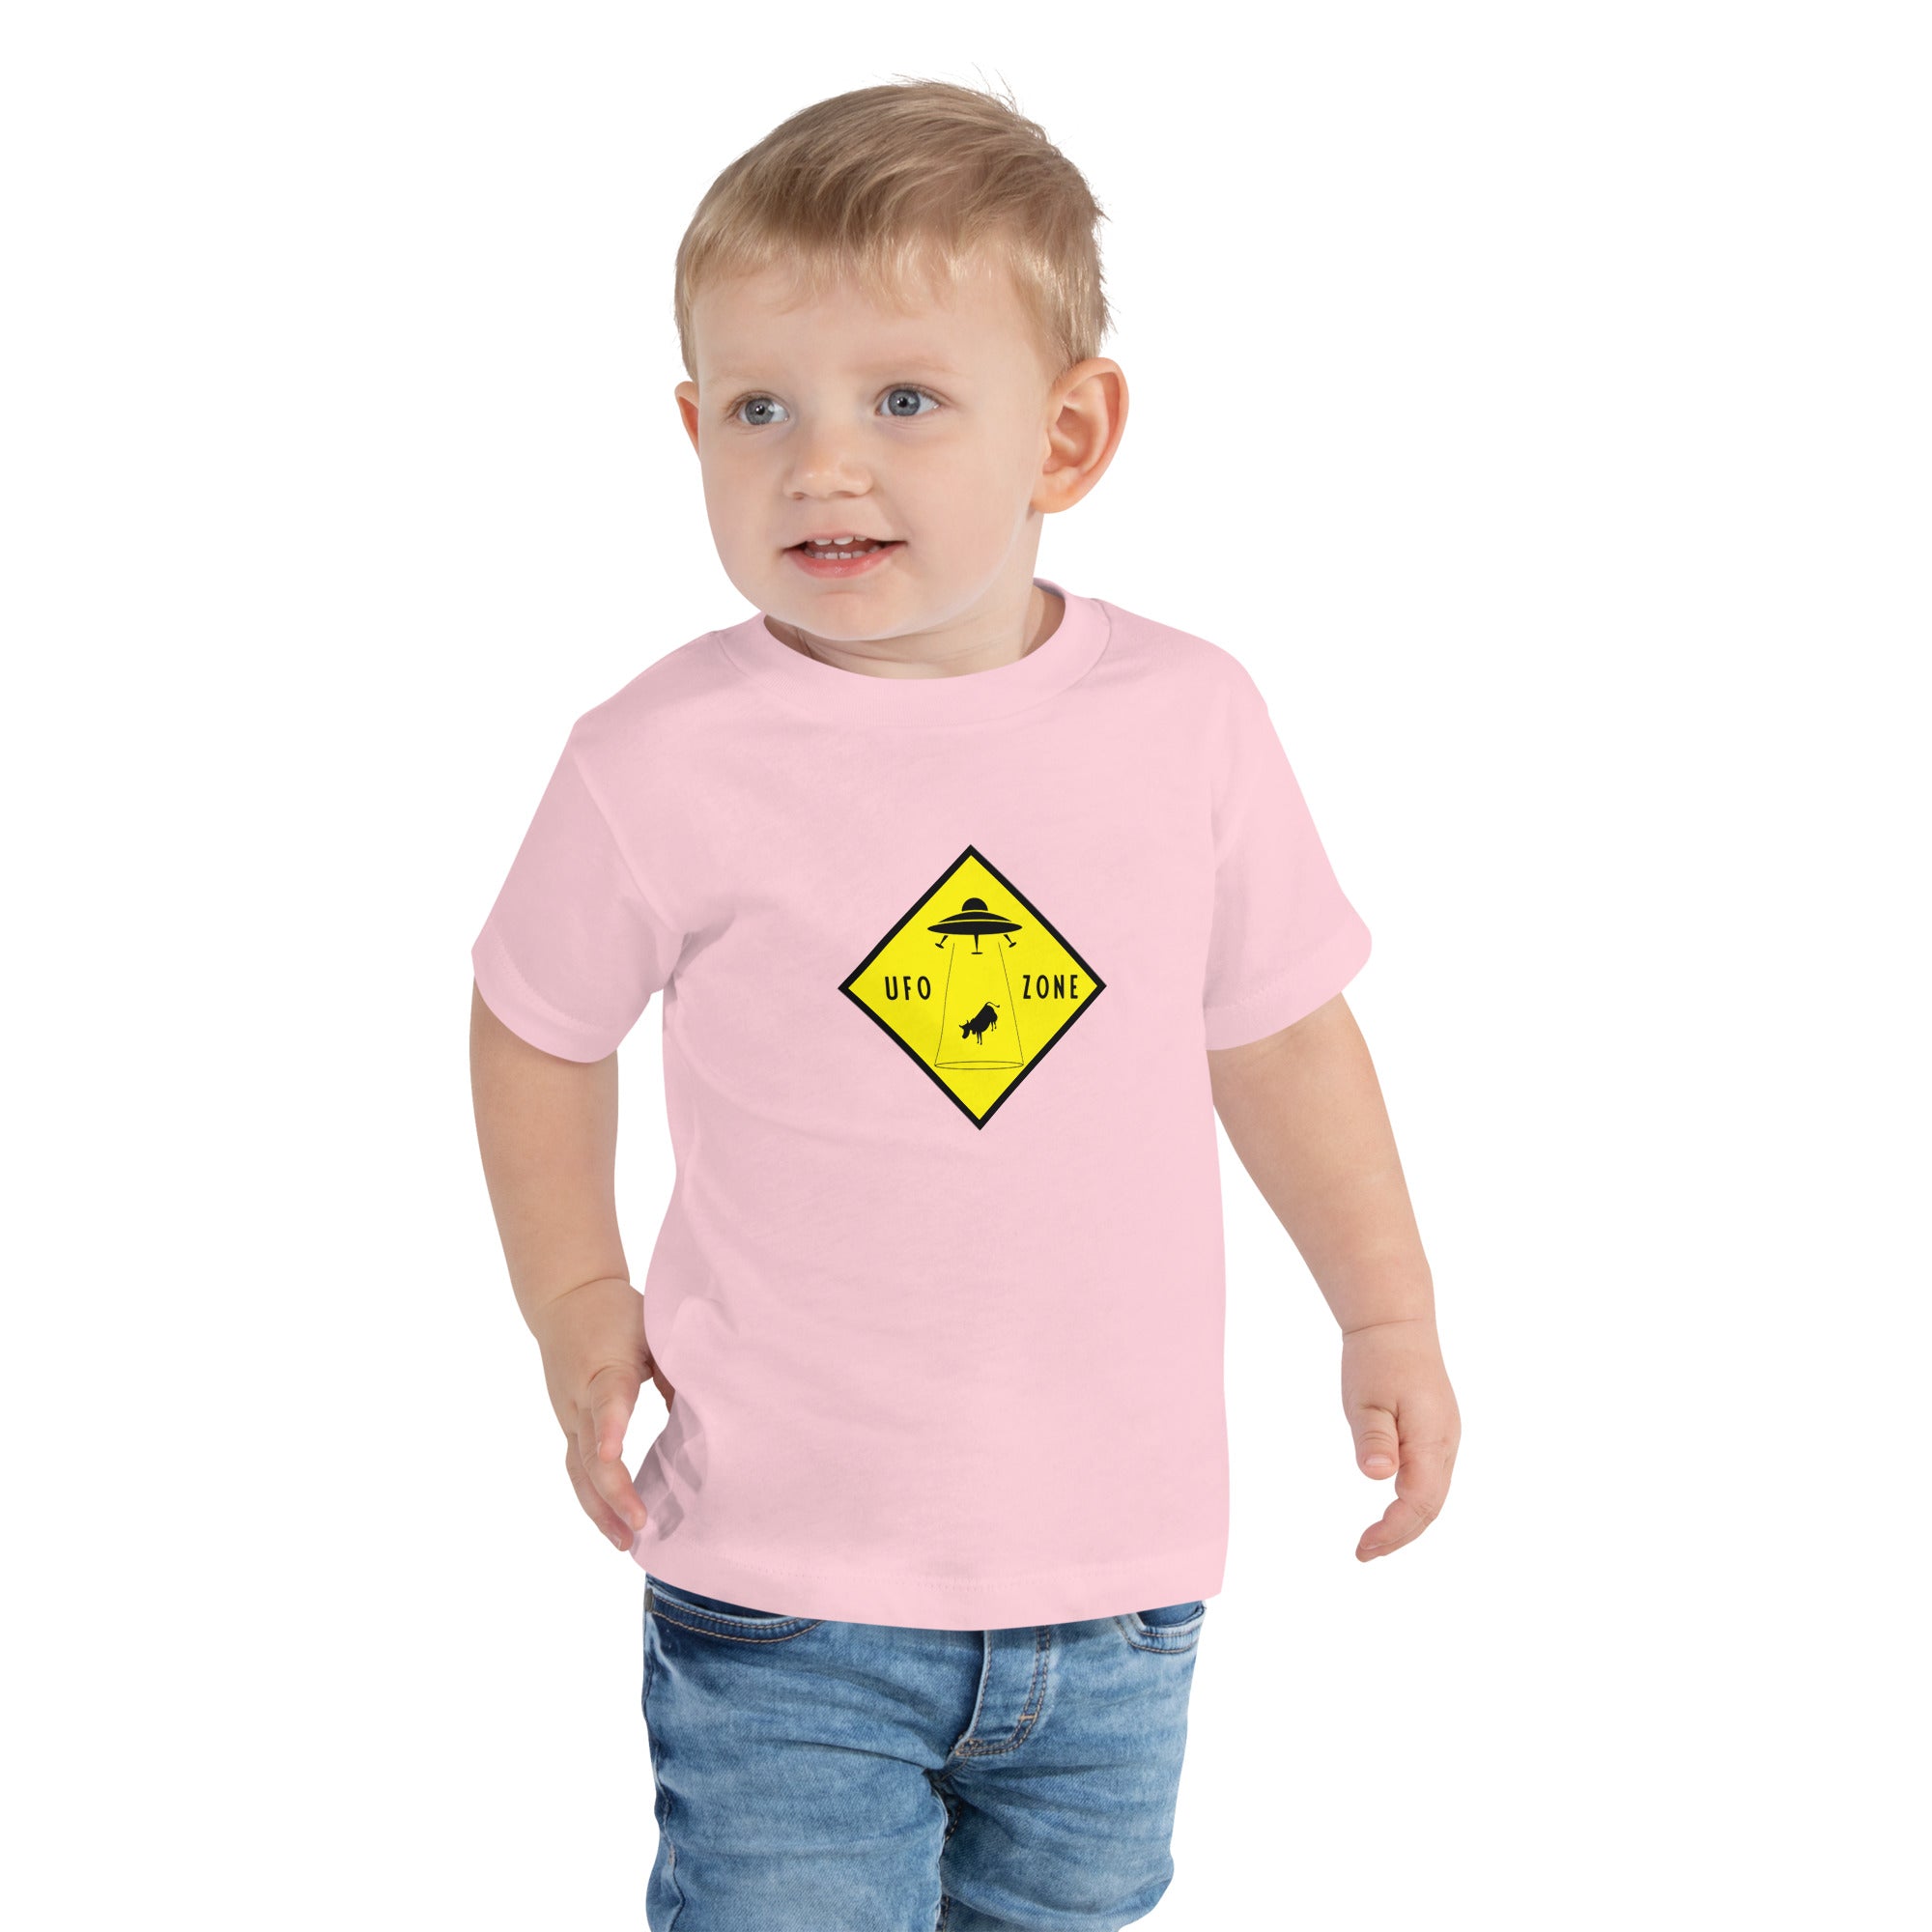 T-shirt pour enfant en bas âge UFO Zone